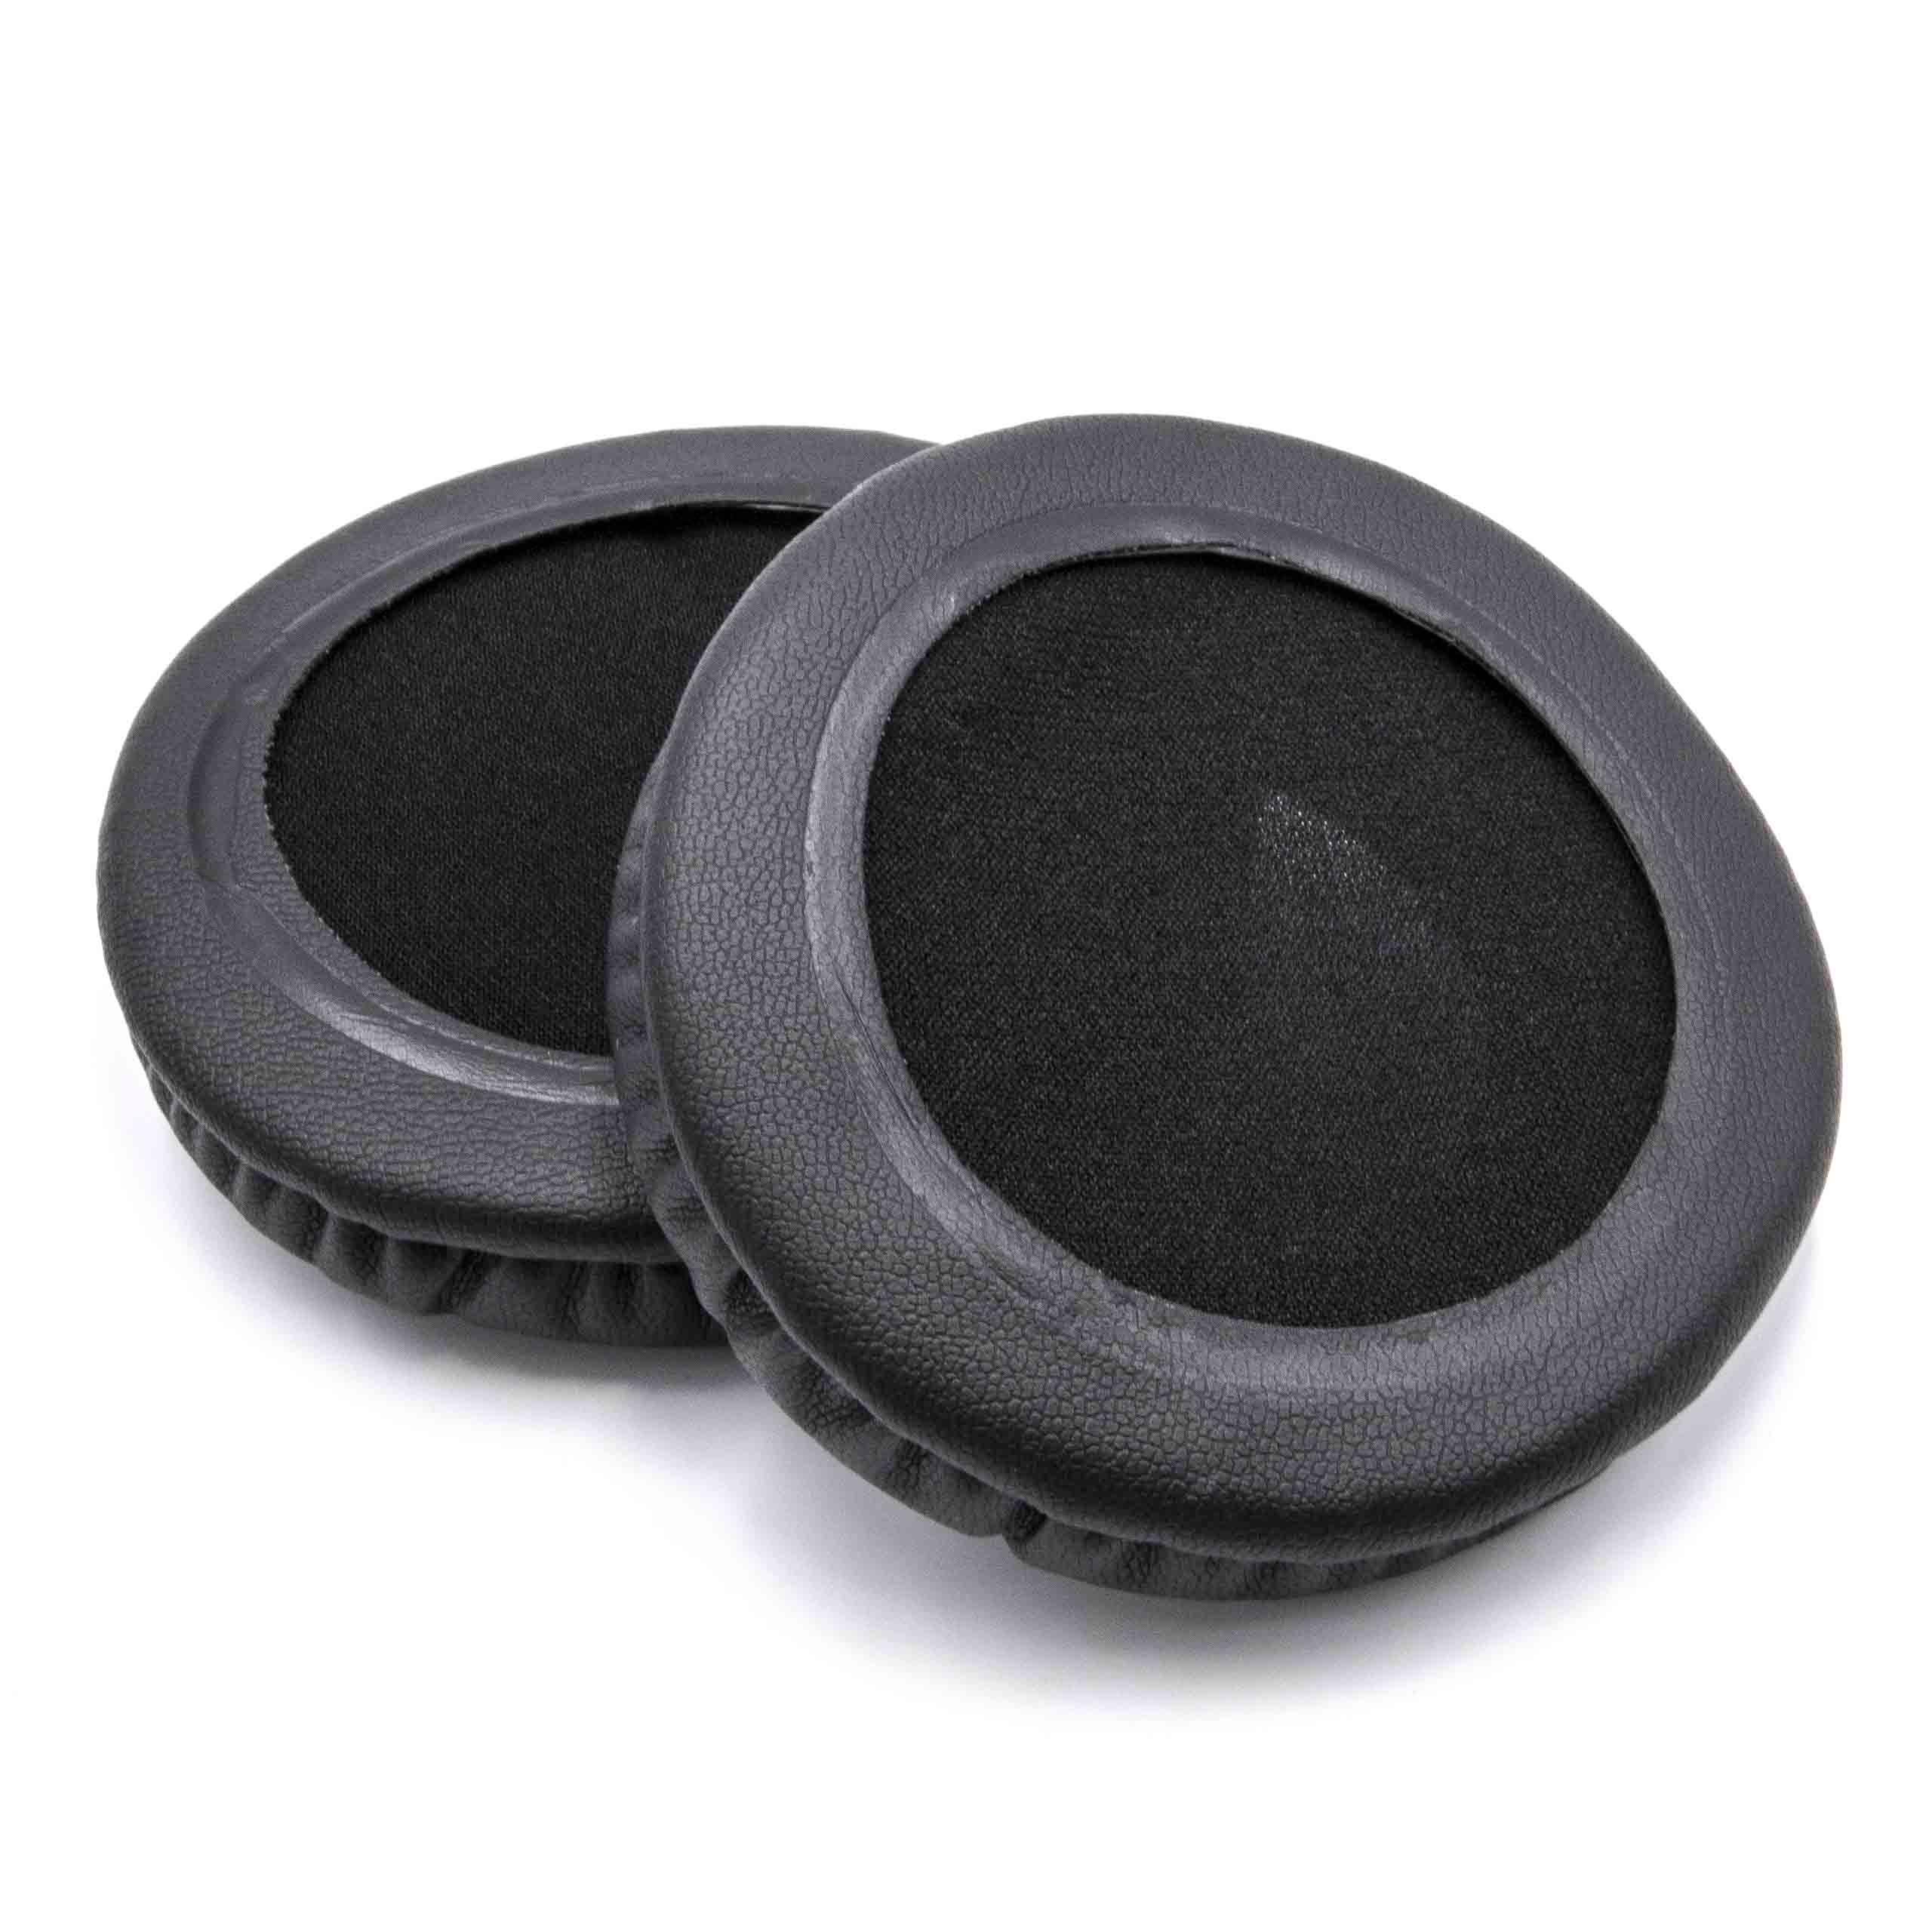 2x Coussinets d'oreille 8cm pour casque écouteurs nécessitant des coussinets de 80 mm / Audio Technica / Sony 